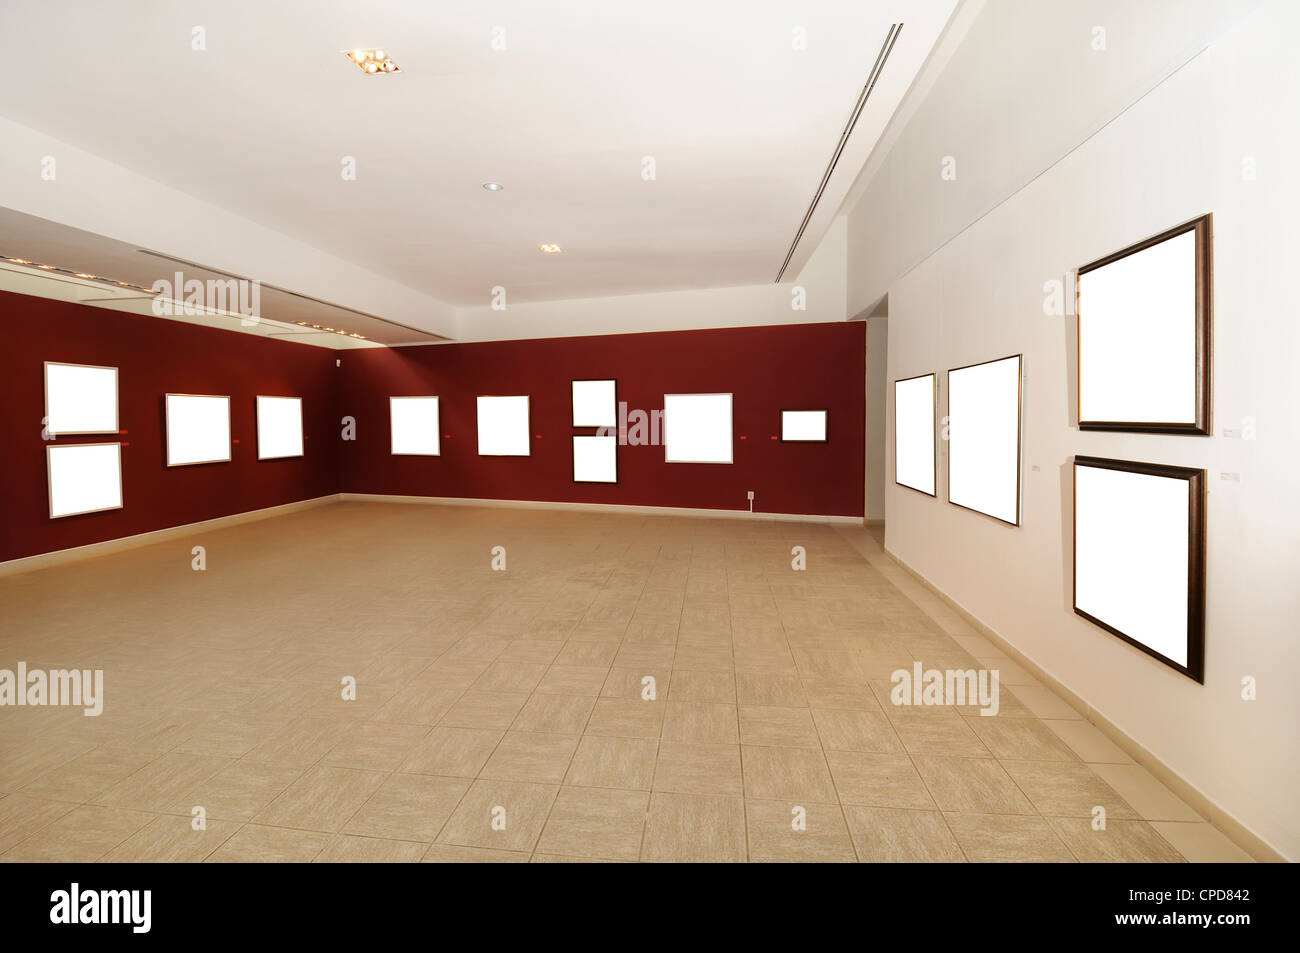 Une vue de l'espace galerie d'art moderne avec toile vierge on red wall Banque D'Images